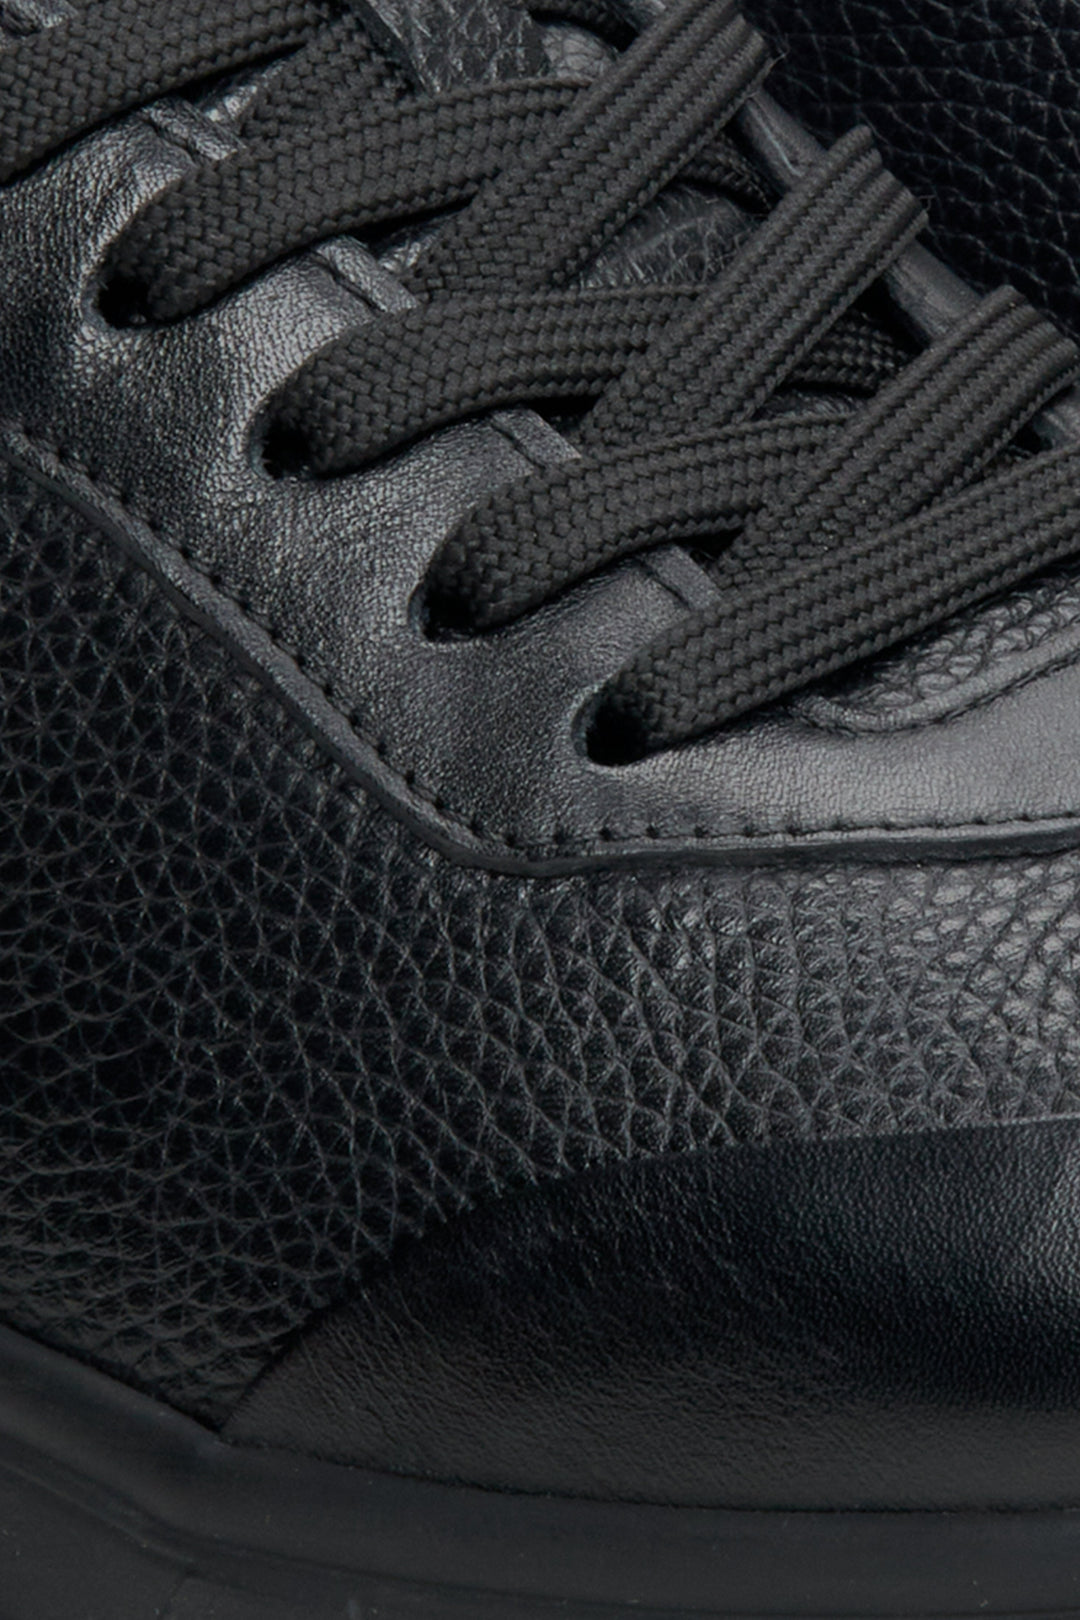 Skórzane, miękkie sneakersy męskie w kolorze czarnym Estro - zbliżenie na system sznurowania.